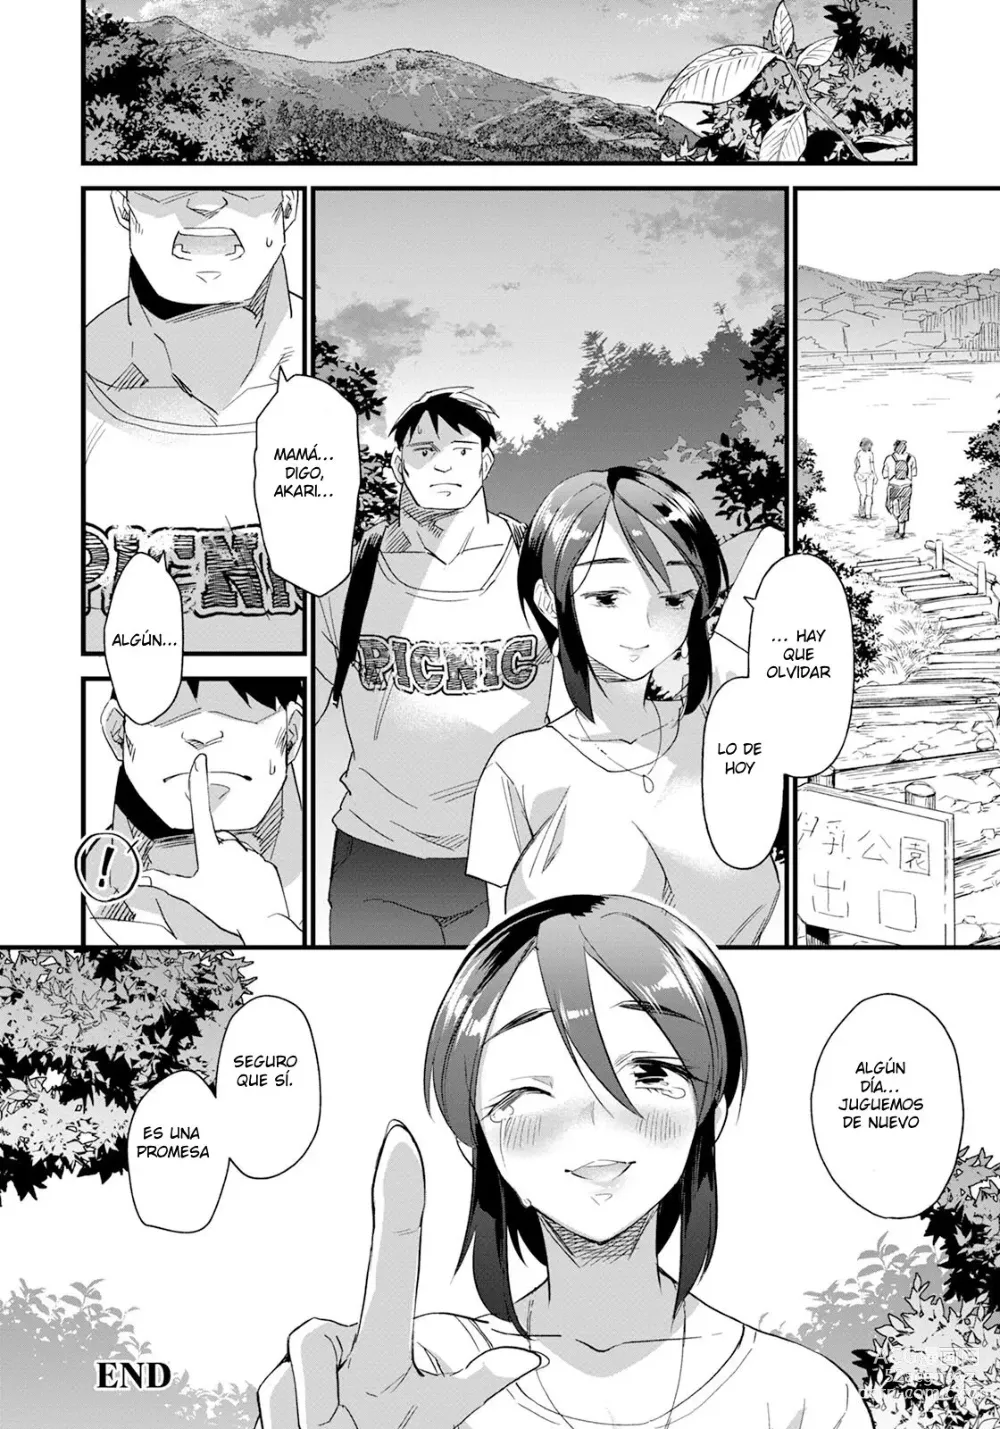 Page 20 of manga divorcio y escalada de montaña